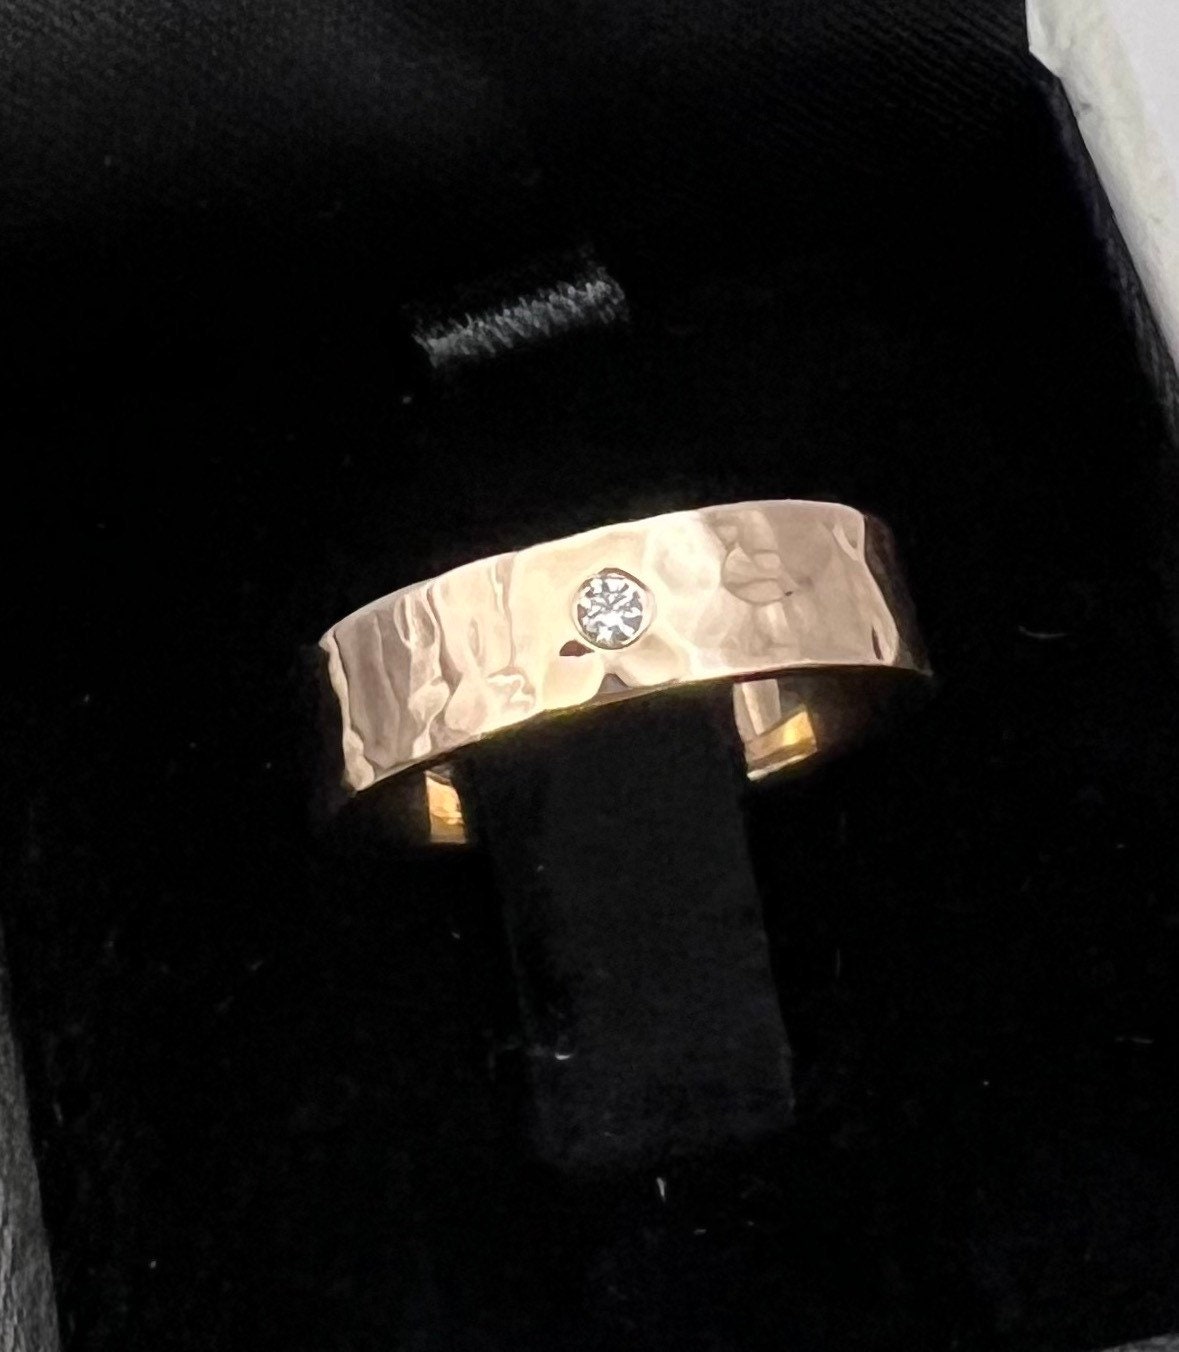 14K Rose Gold Diamond Ring with Genuine Diamond